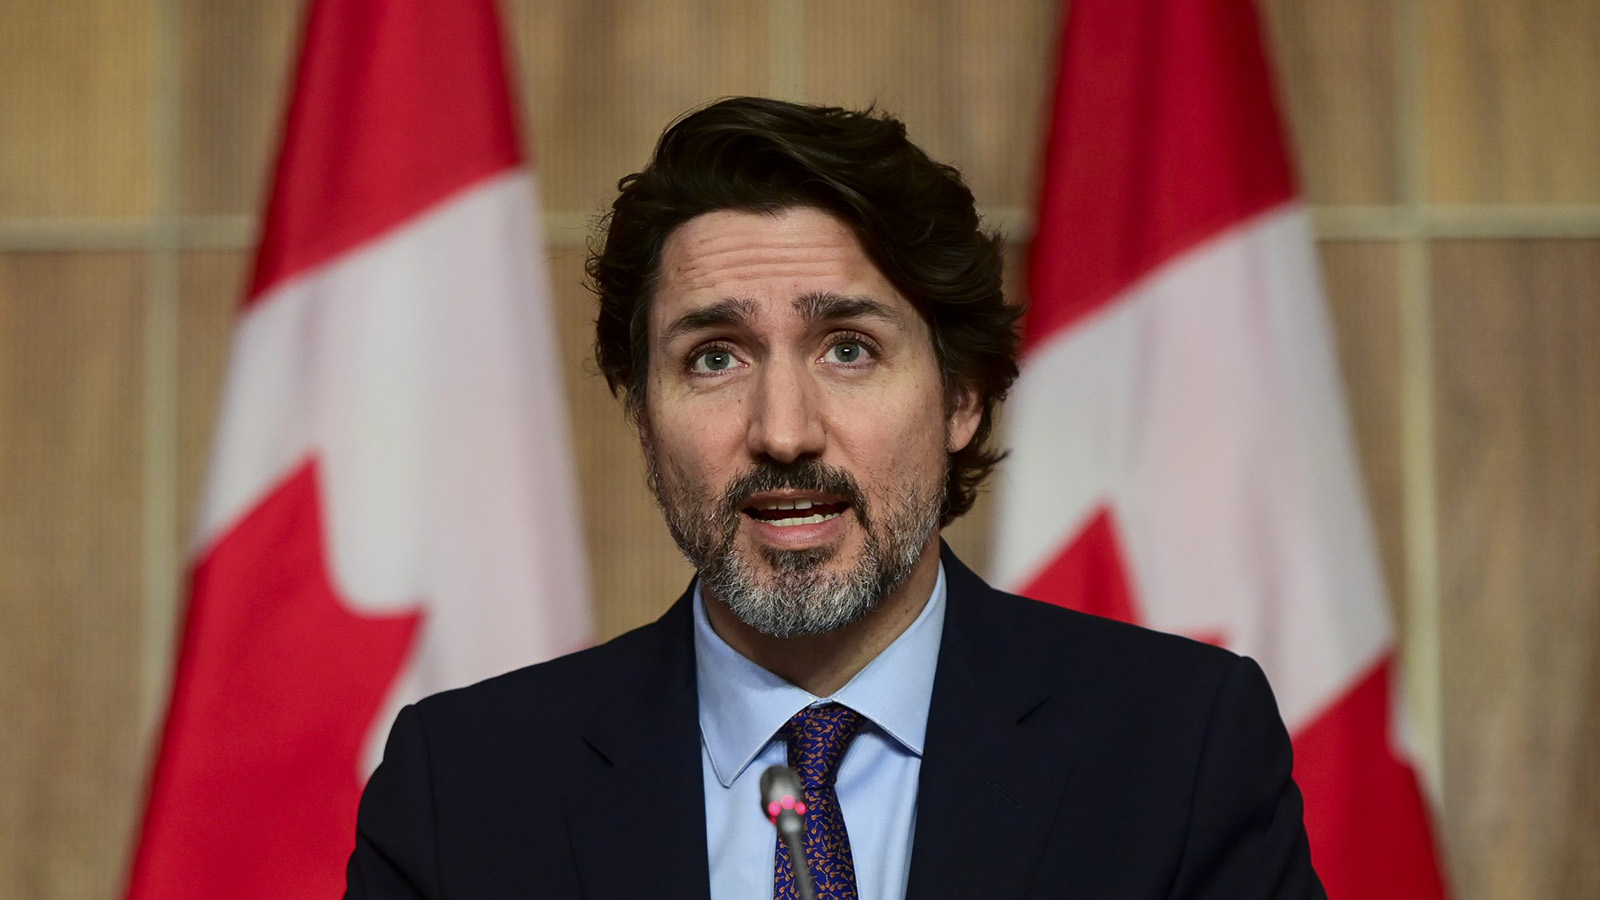 Eski yatılı okulda 215 çocuğa ait toplu mezar bulunmuştu; Kanada Başbakanı  Trudeau "Ne yazık ki, münferit bir olay değil" dedi